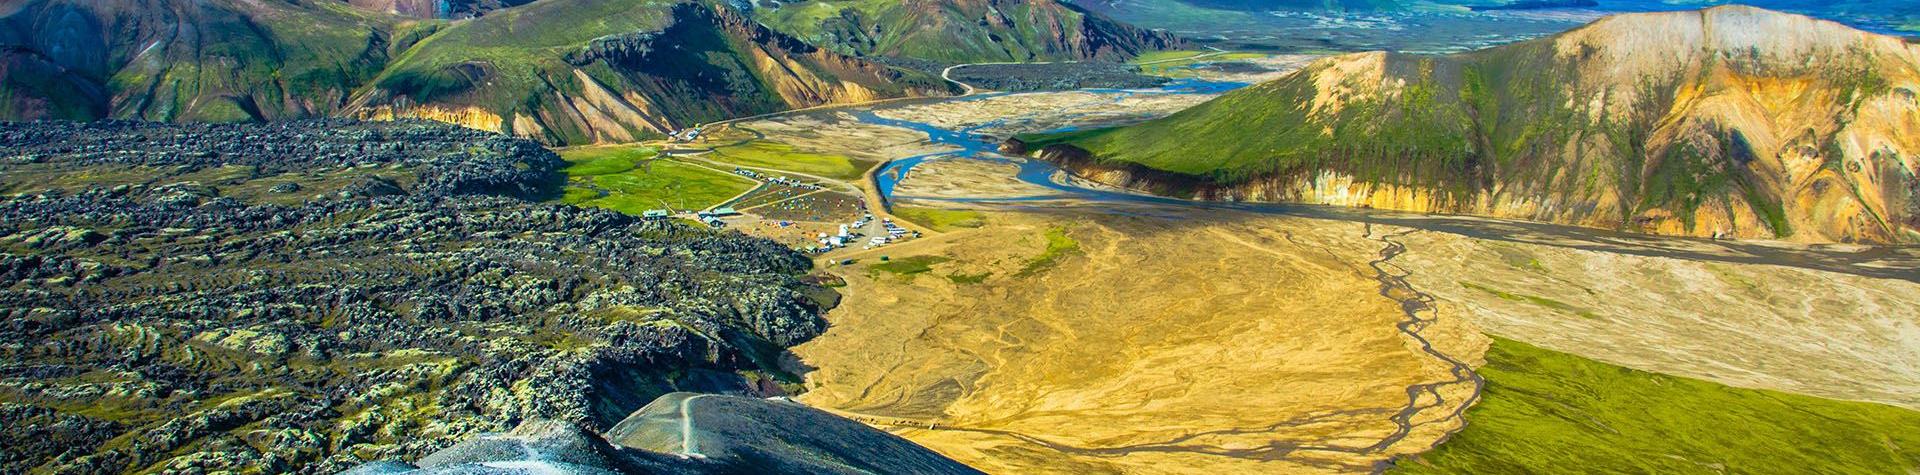 Vandring & varme kilder i det islandske højland